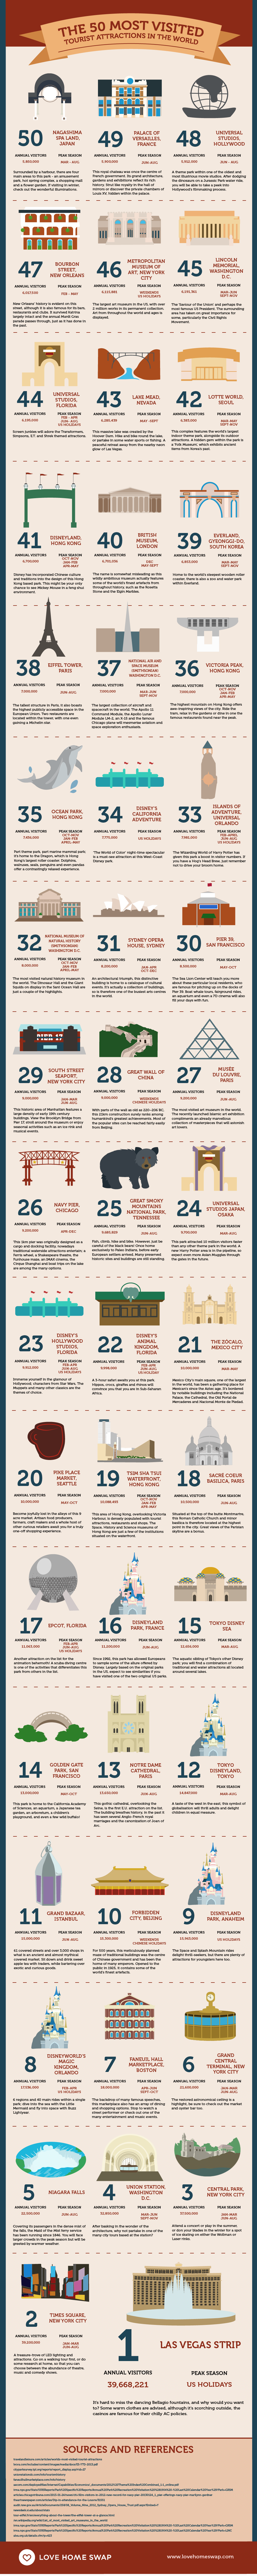 Infográfico com as 50 maiores atrações e lugares mais visitados do mundo